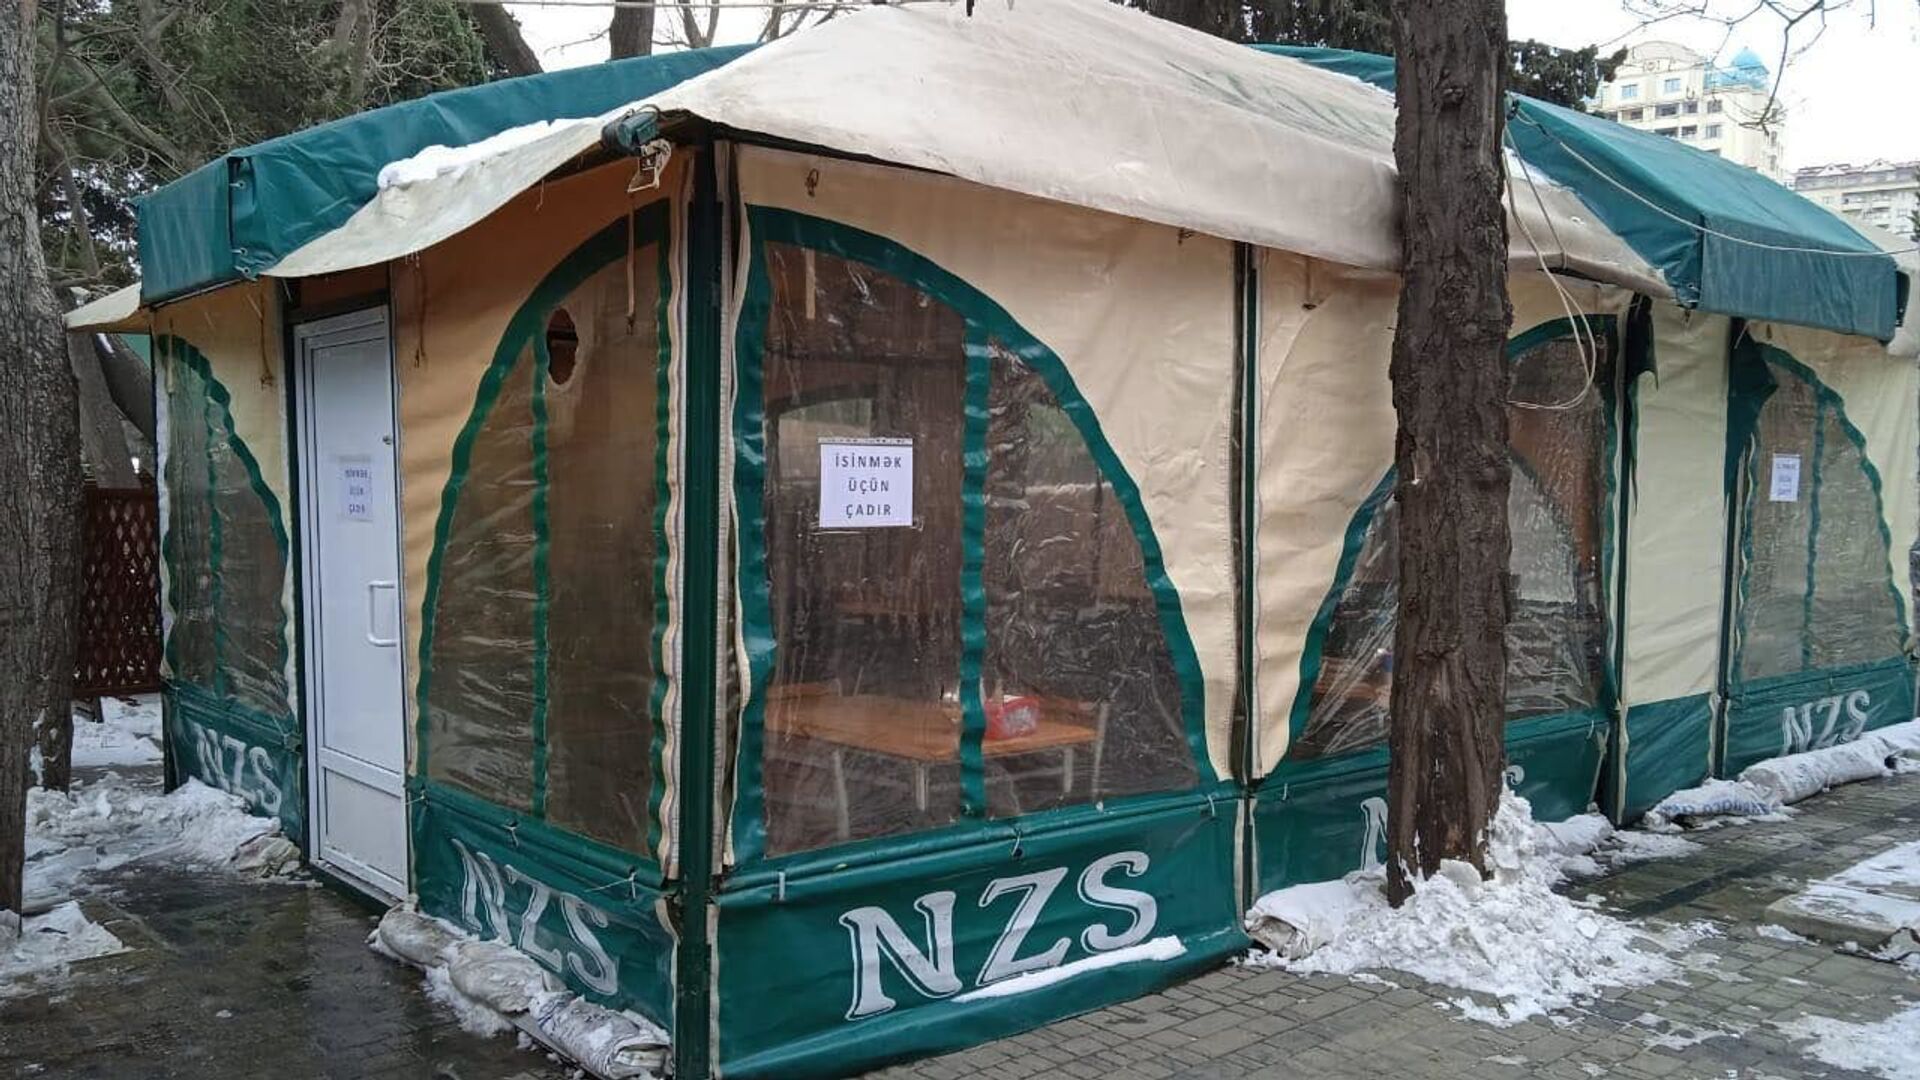 Gecələmək mümkün deyil: qar-çovğunda qalanlar üçün çadırlar necə işləyir - FOTO  - Sputnik Azərbaycan, 1920, 25.02.2021